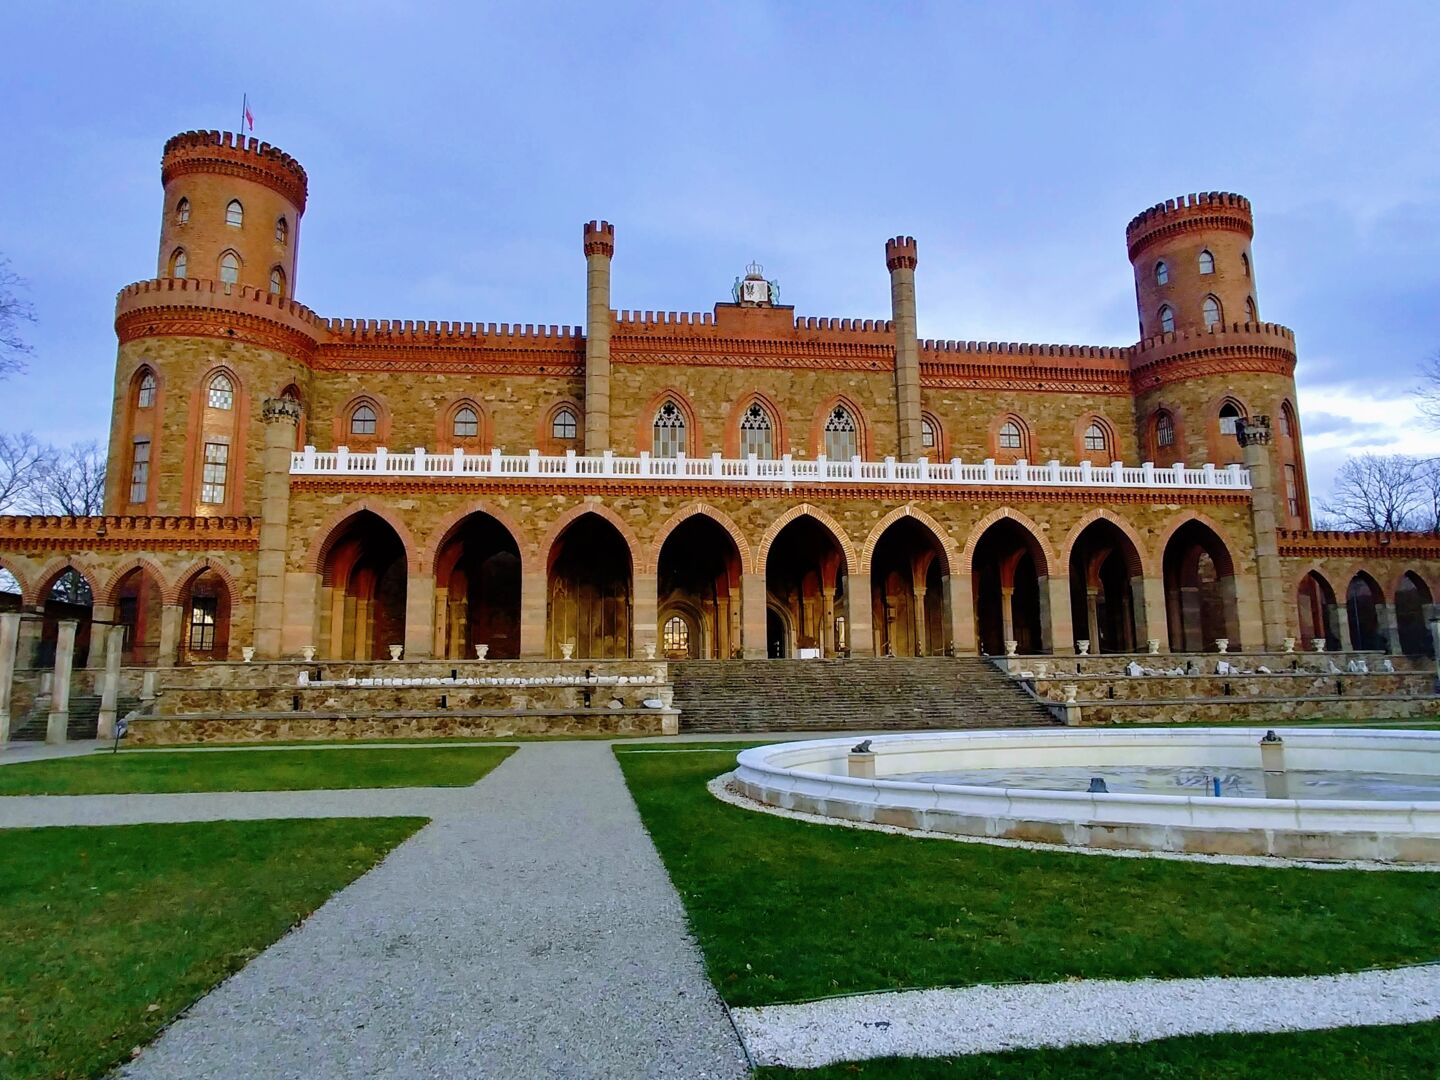 Et palass i gotisk stil med to tårn, bygget i rødbrun murstein med grønn plen og fontene i front.